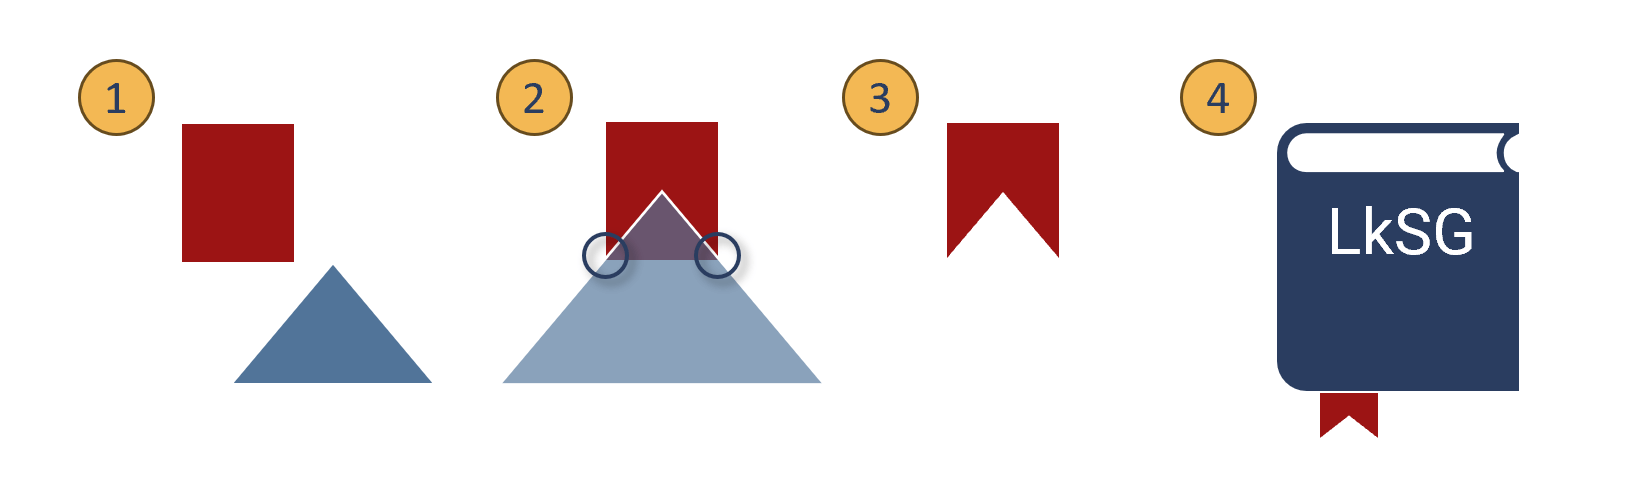 Visualisierung der nachfolgend aufgeführten vier Schritte zur Herstellung eines Lesebändchens aus einem Rechteck und einem Dreieck.